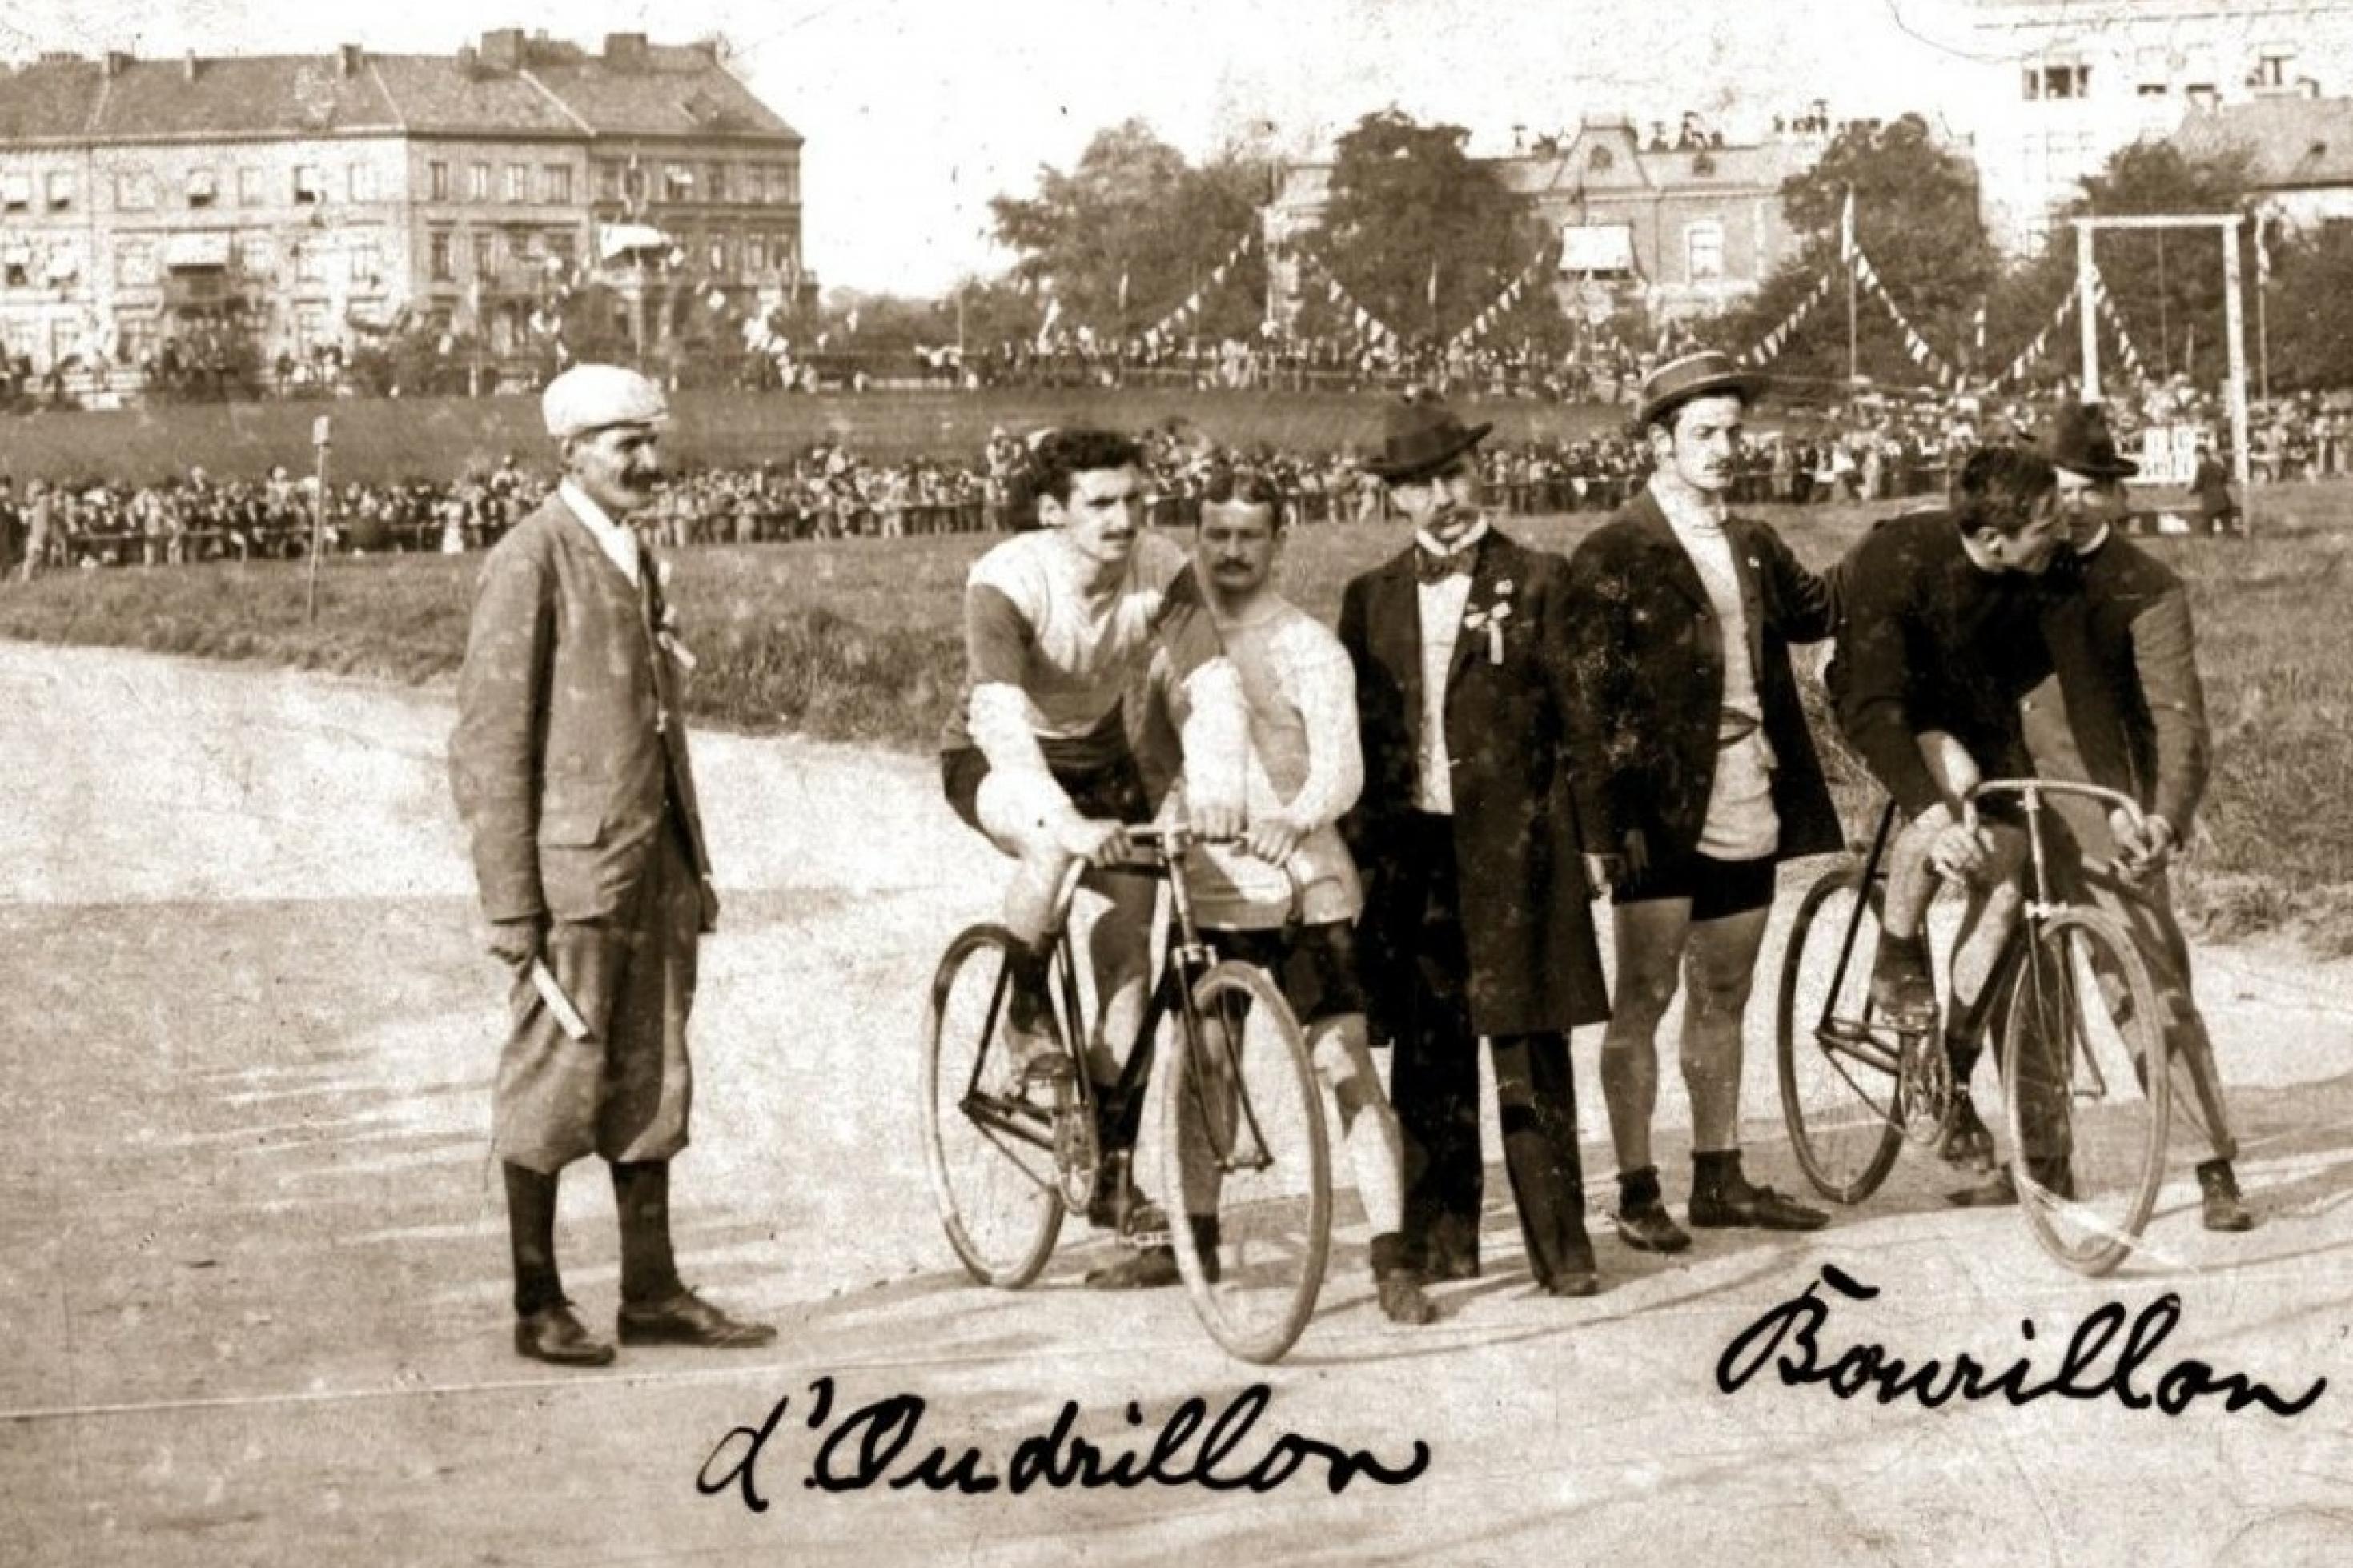 Das Schwarzweißfoto zeigt vor einem volksfestartigen Hintergrund zwei Rennfahrer auf ihren Fahrrädern am Start, Im Stand gehalten von Helfern.